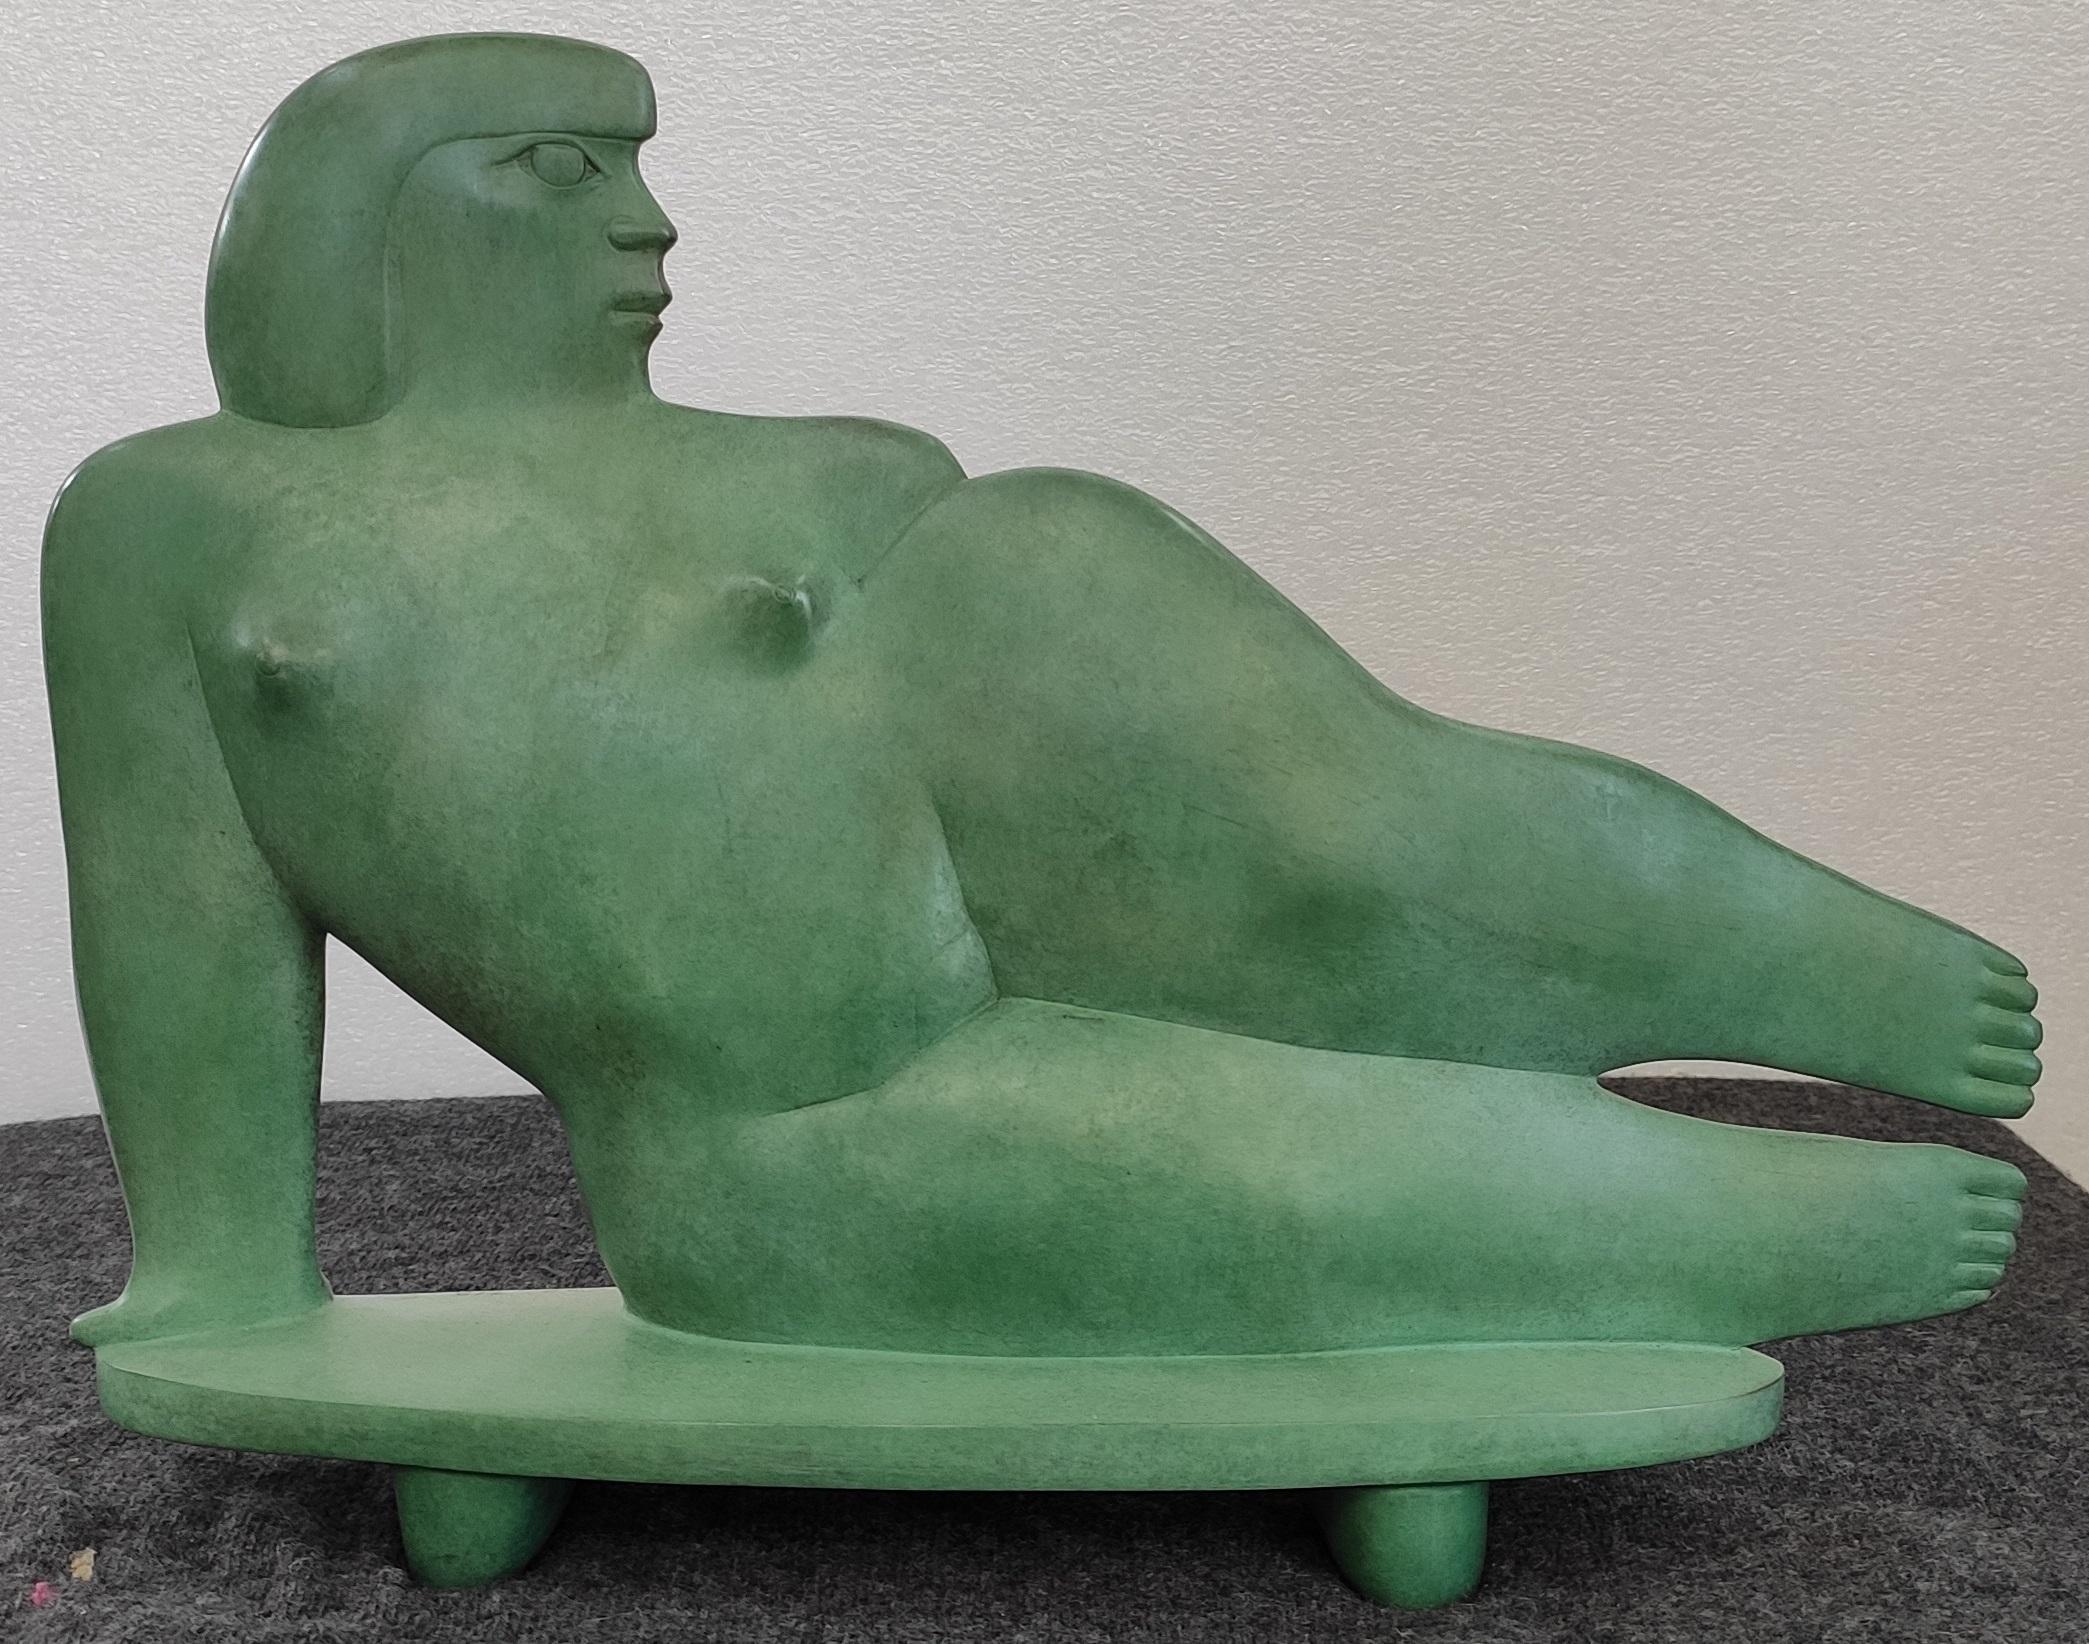 KOBE Nude Sculpture – Bronzeskulptur Lady Lying Down, weibliche Figur, Frau, Akt, Bronzeskulptur